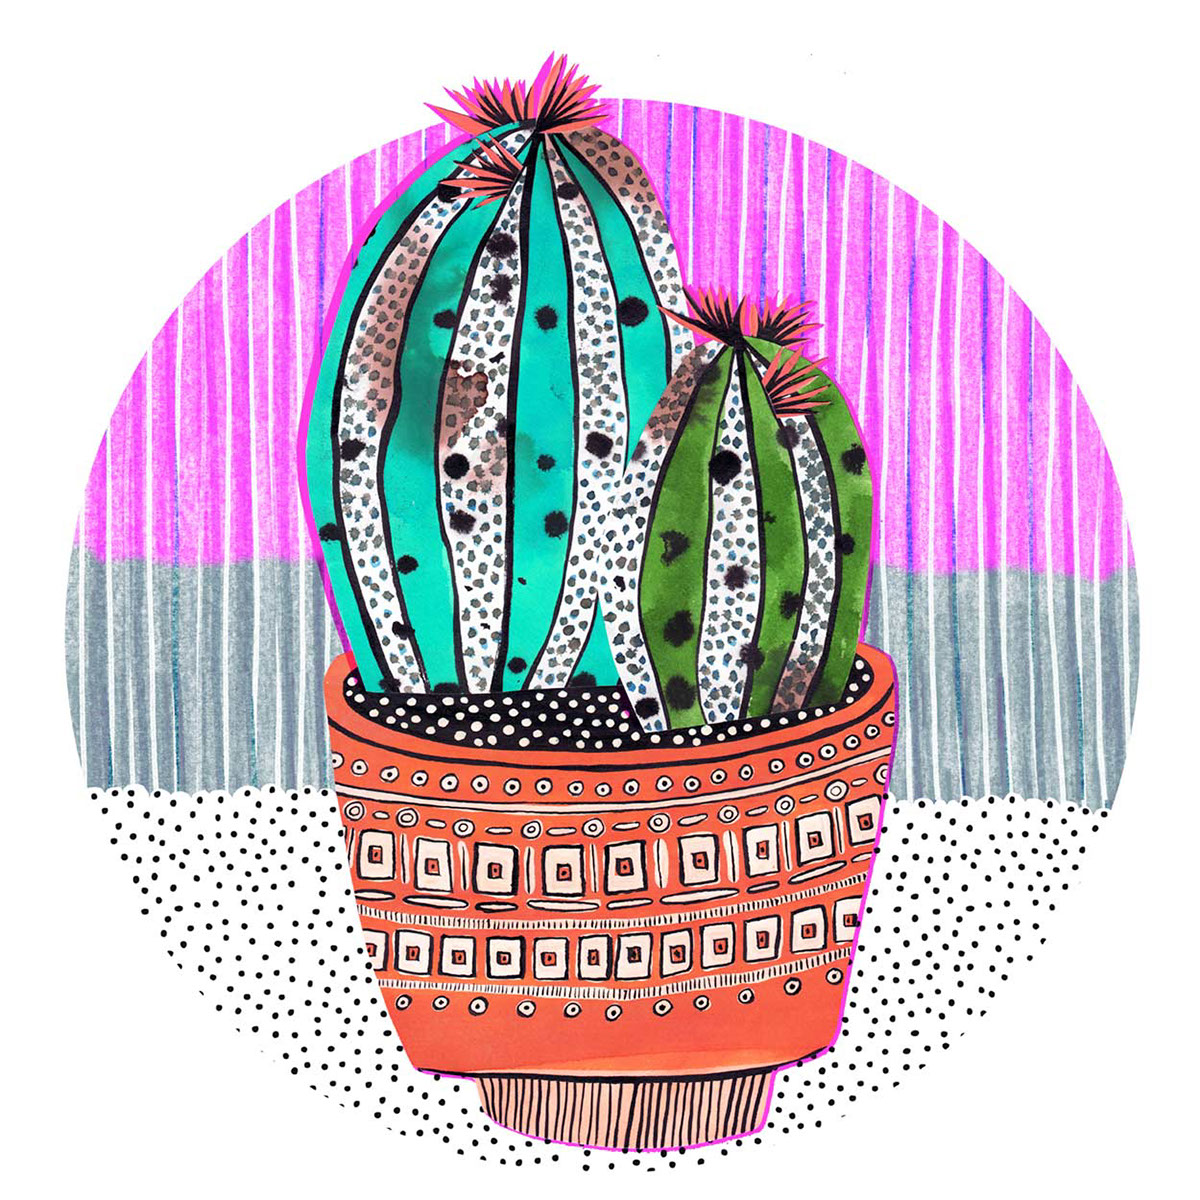 cactus cacti Plant plants Pottery veronique de jong collage mixed media ILLUSTRATION 